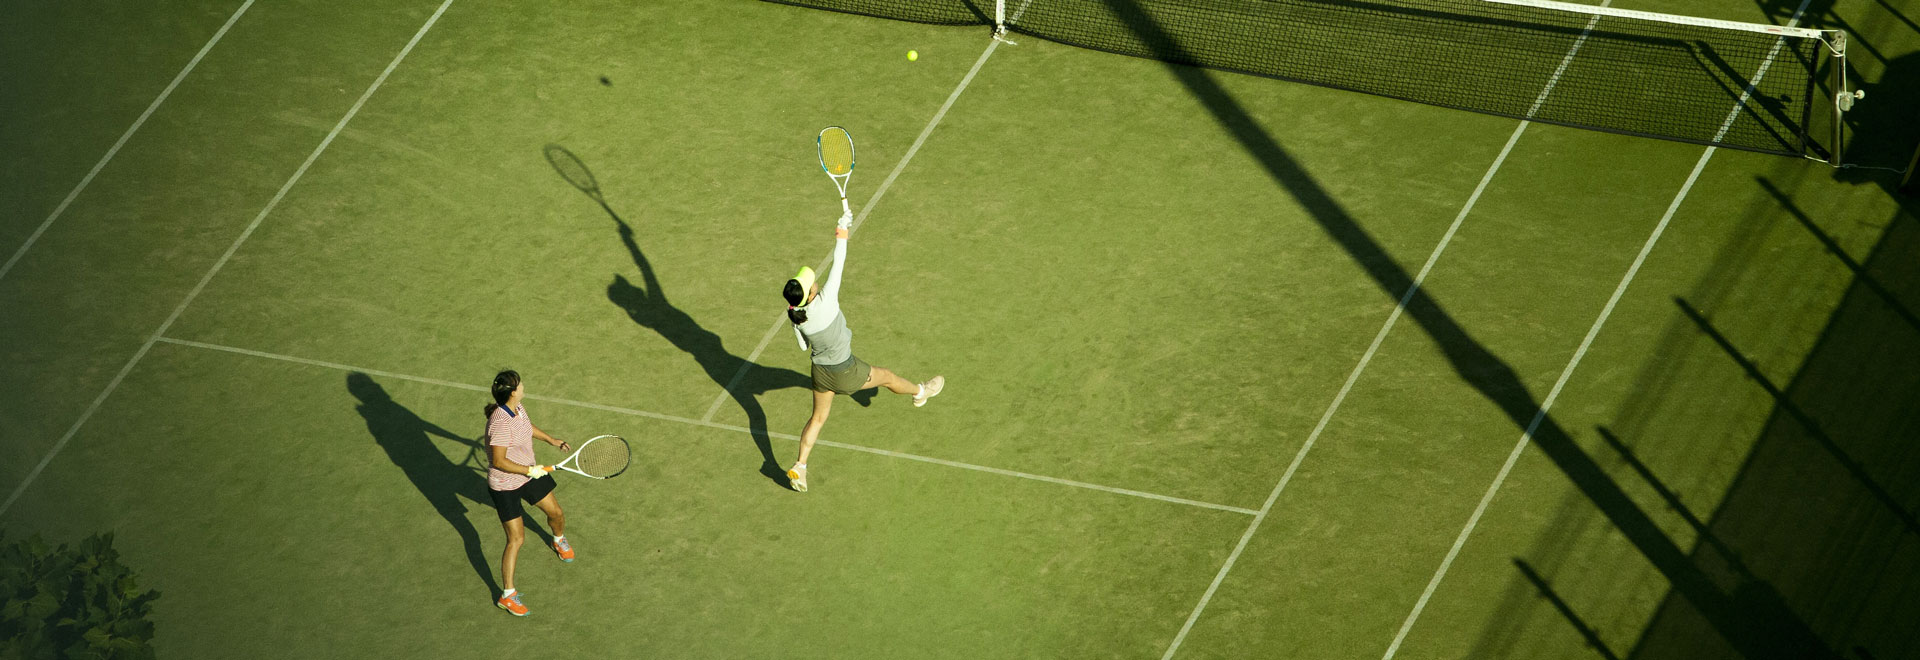 overhead view of women's tennis